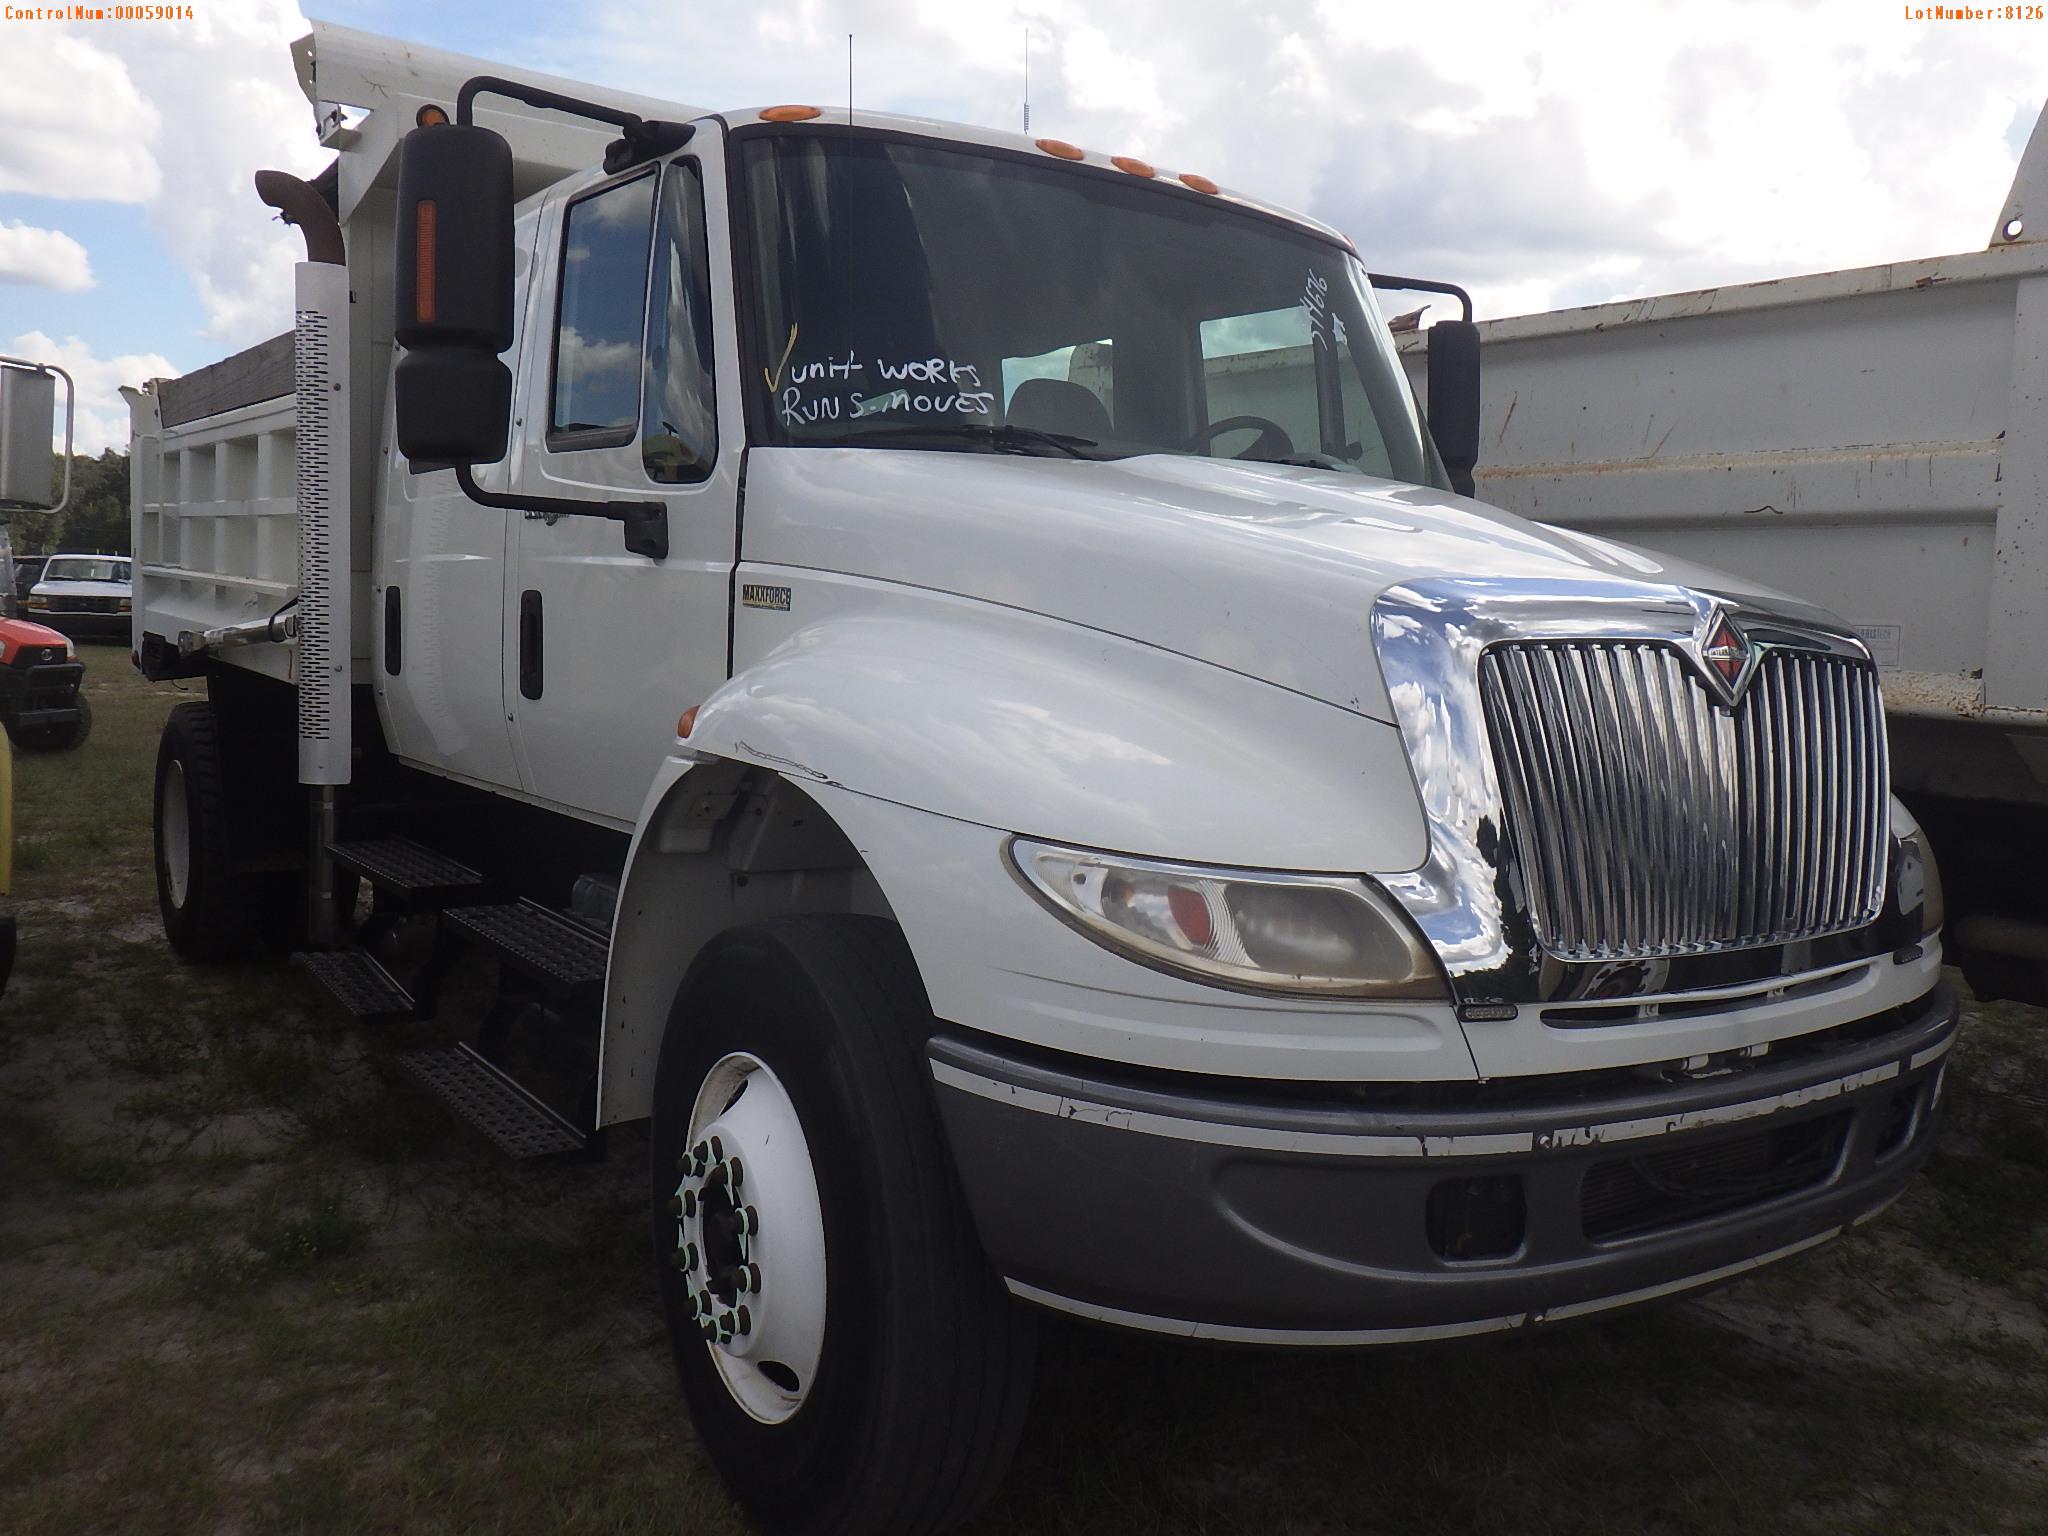 10-08126 (Trucks-Dump)  Seller:Private/Dealer 2011 INTL 4400